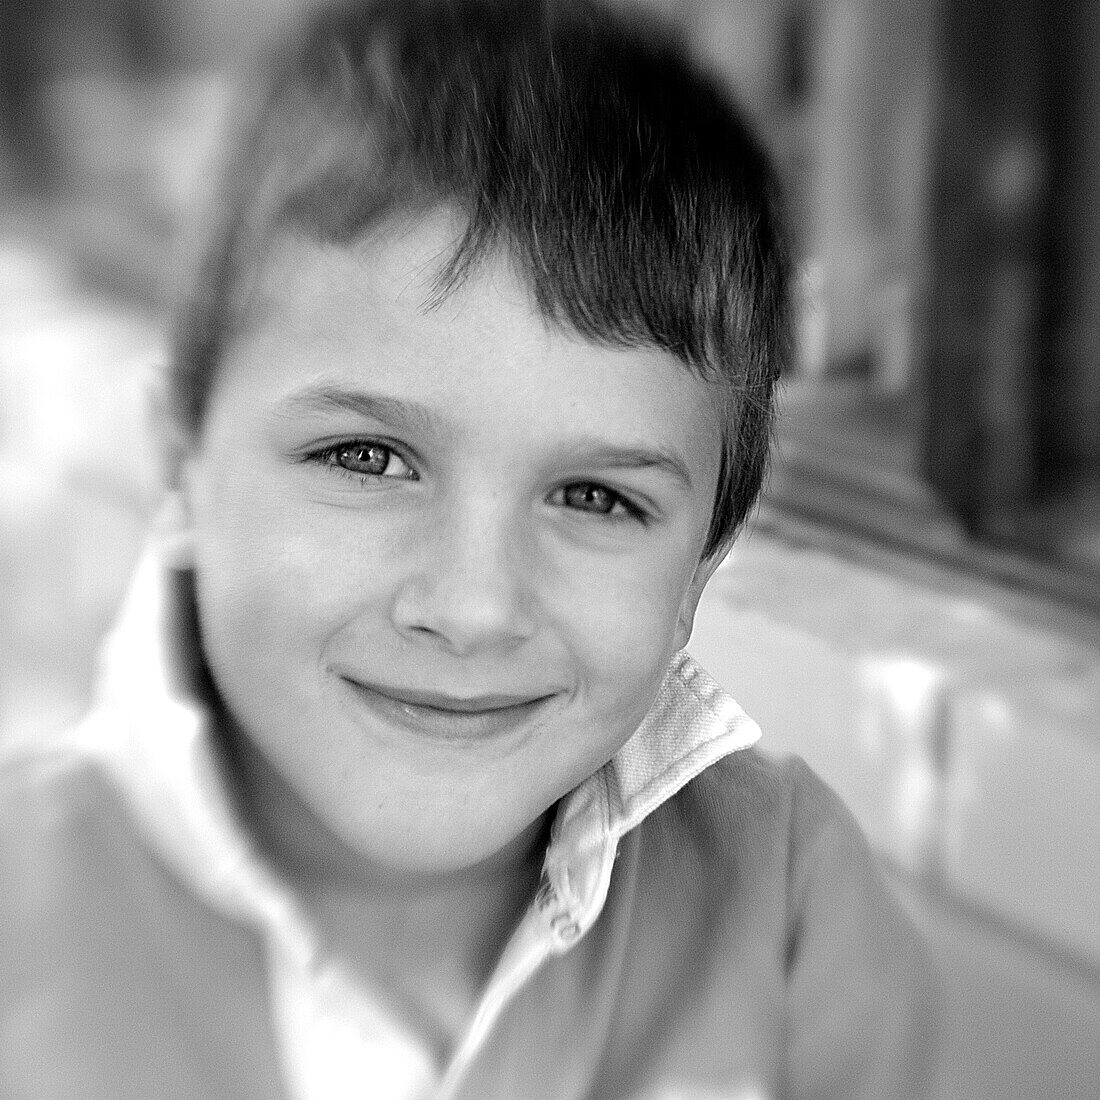 Smirking boy (black and white photo using Lensbaby technique), Borden, Western Australia, Australia